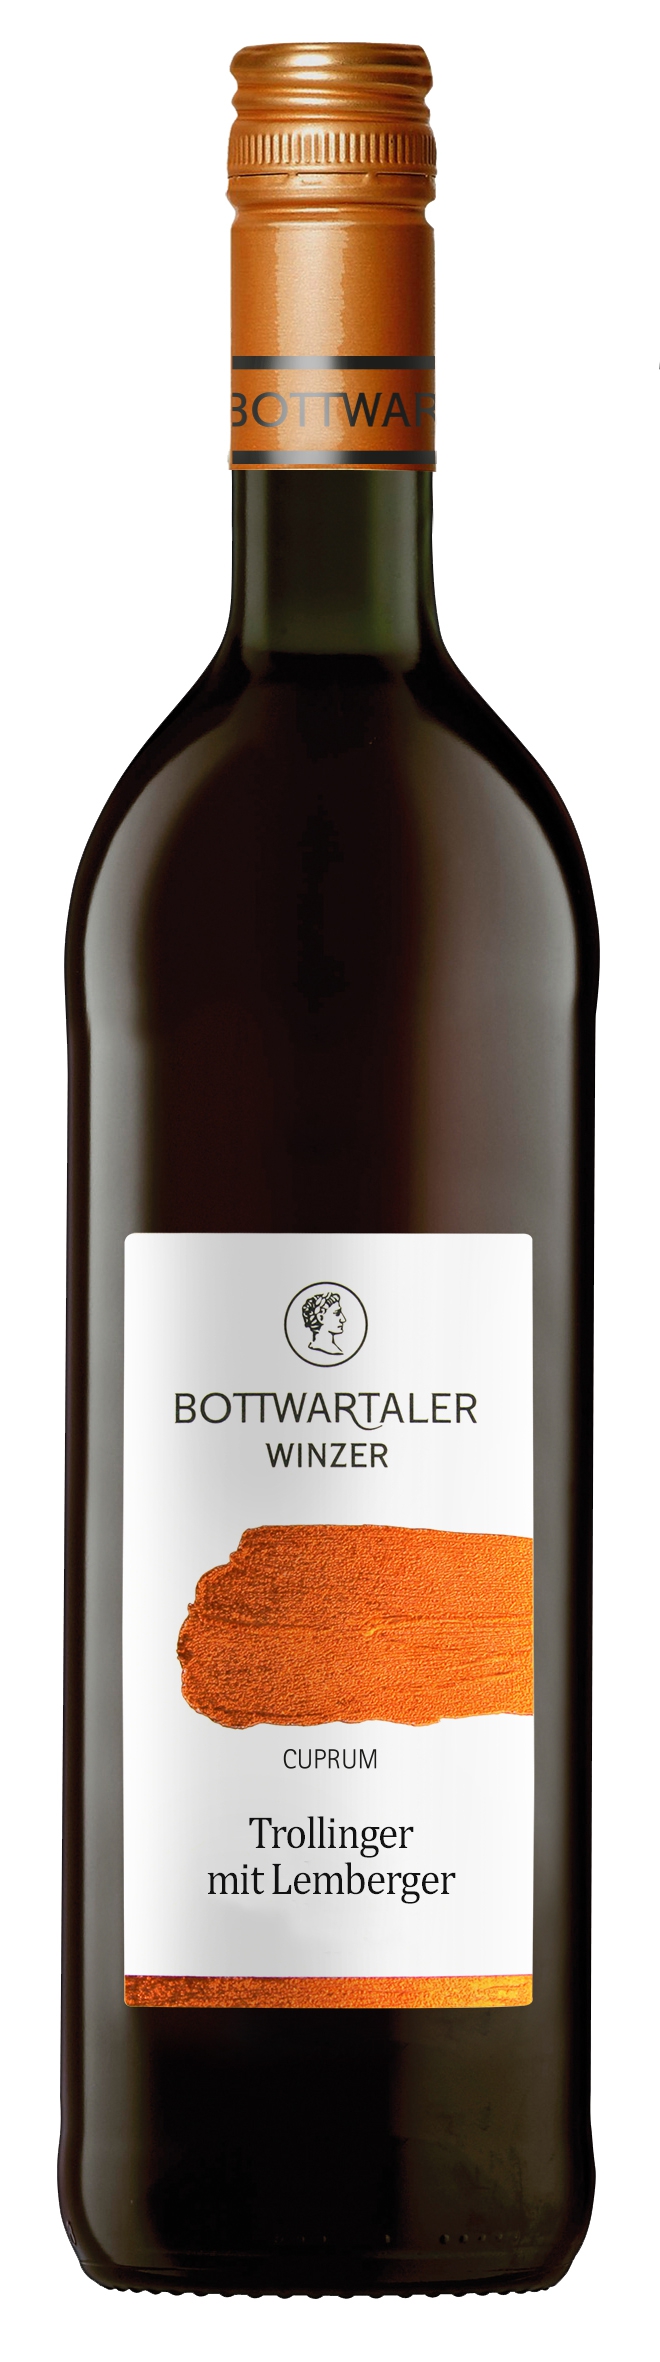 Bottwartaler Winzer 2021 Kupfer / Wartberg Lemberger kaufen mit Trollinger - Beilsteiner halbtrocken Wein günstig